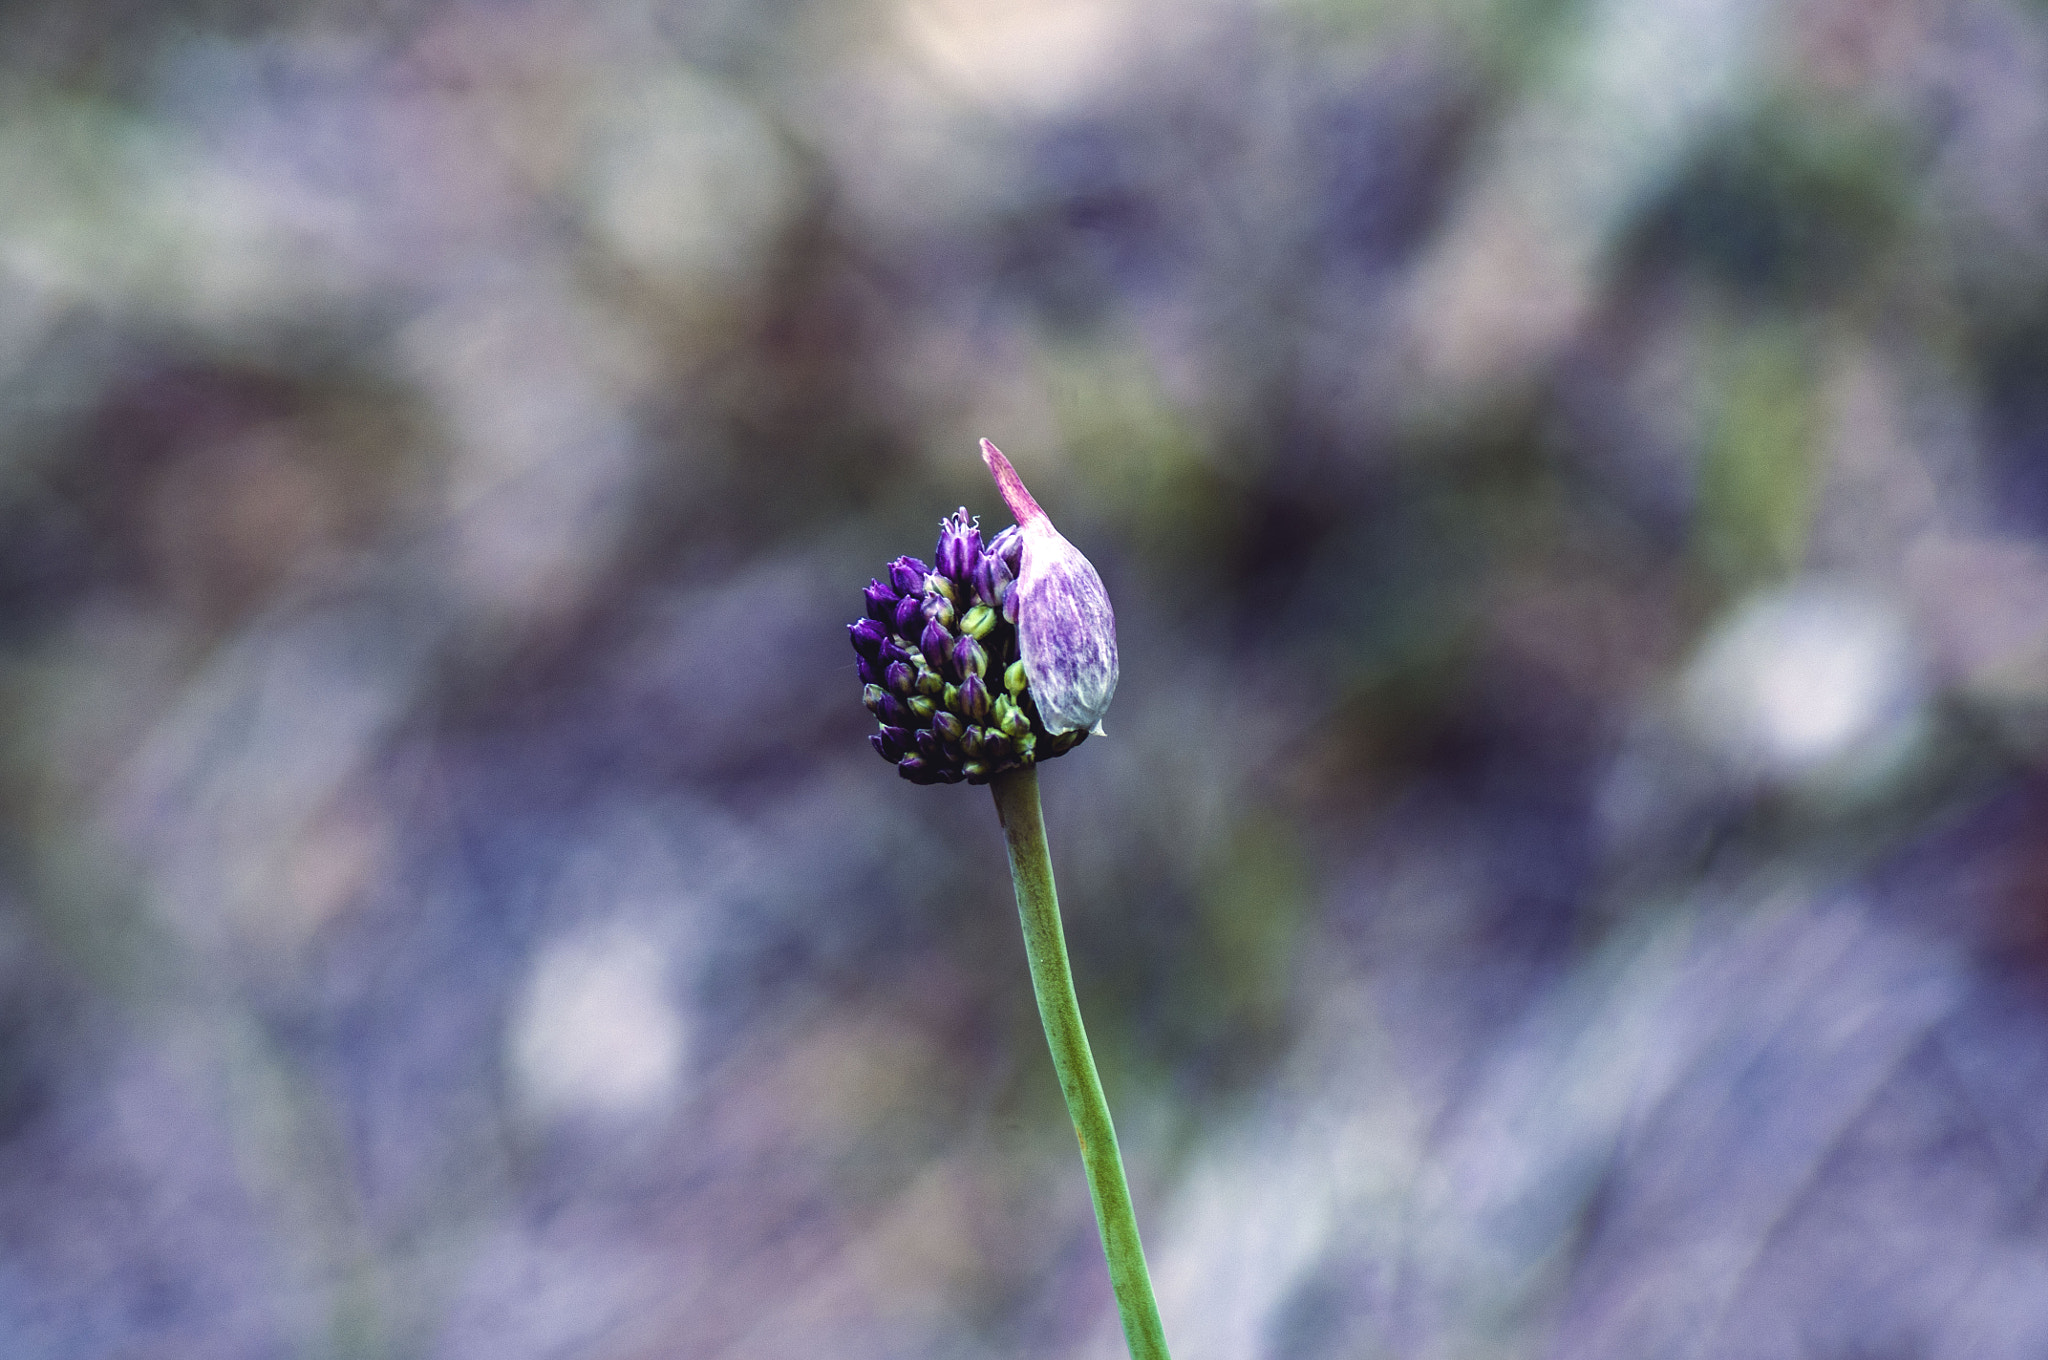 Pentax K-x + Tamron AF 70-300mm F4-5.6 Di LD Macro sample photo. Allium ampeloprasum photography